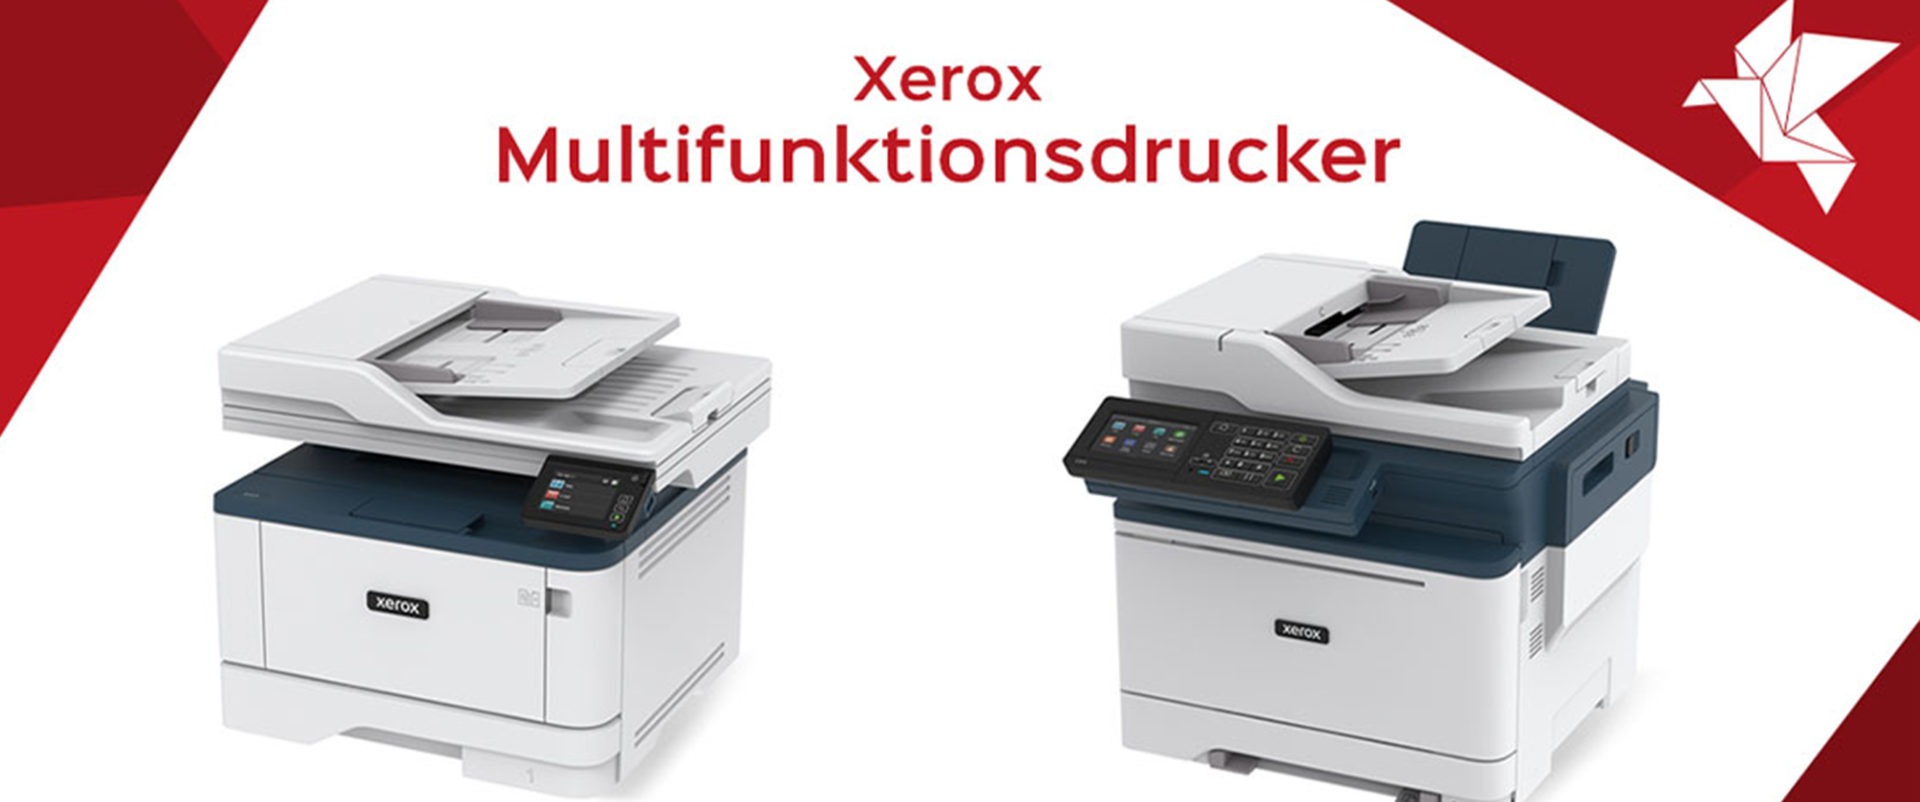 Die VersaLink C7100-Serie von Xerox wurde in der Kategorie Multifunktionssysteme zum Produkt des Jahres 2022 gekürt!